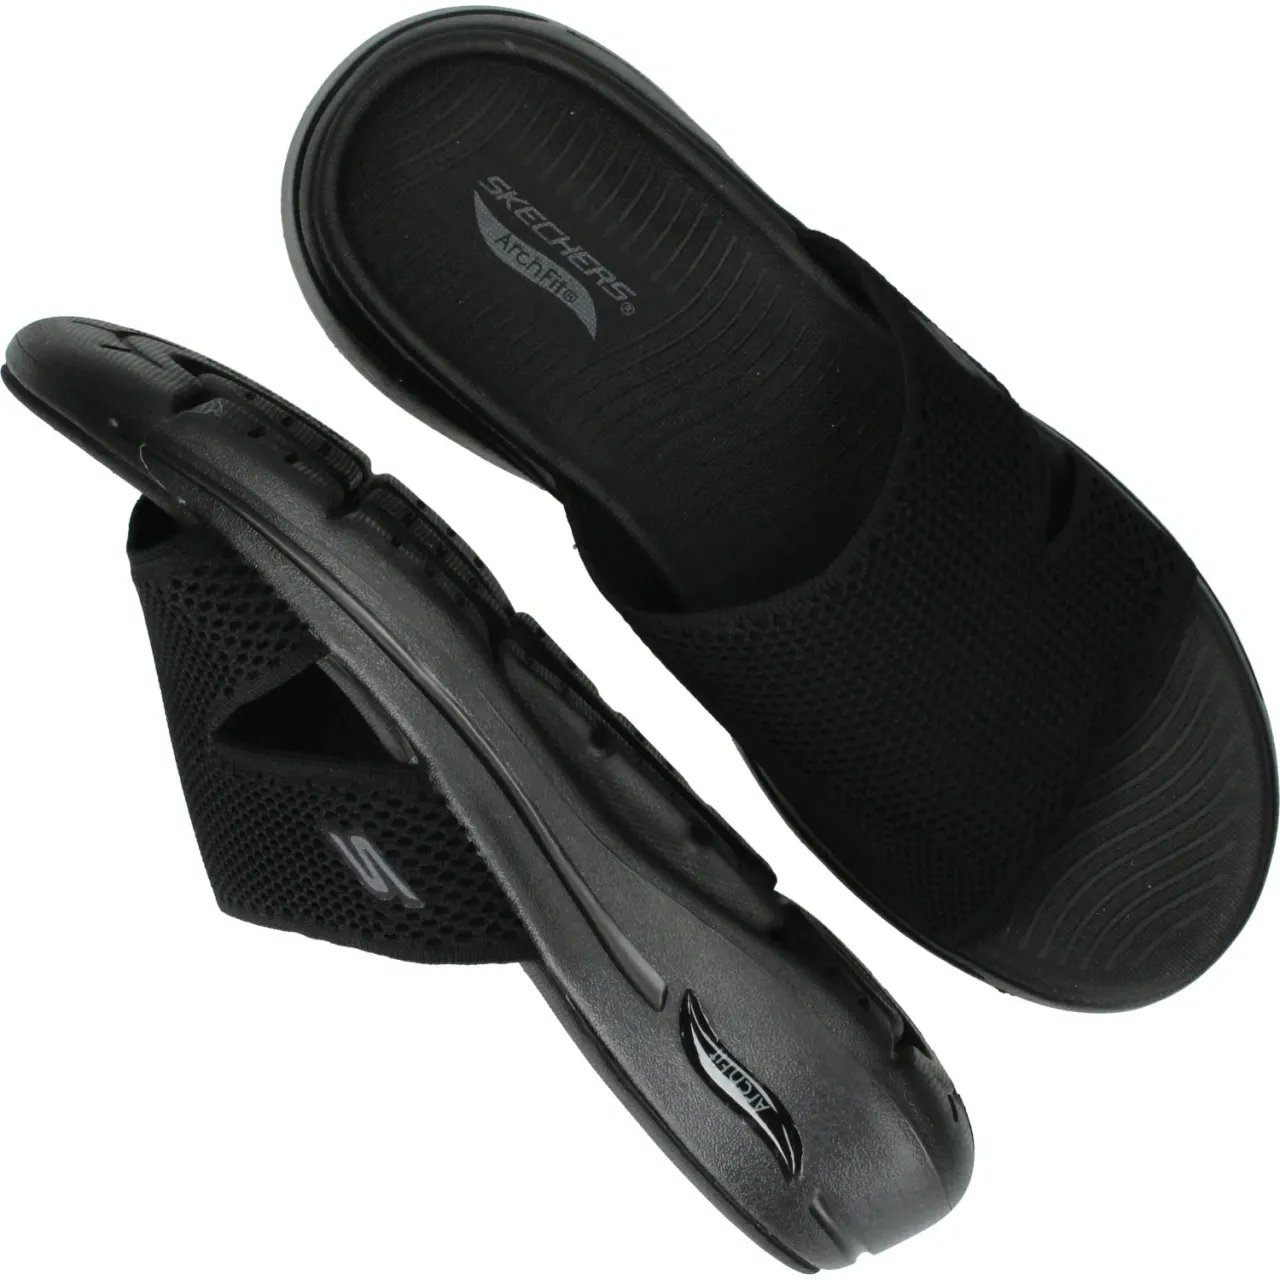 Skechers Go walk arch fit sandal joyful slipper